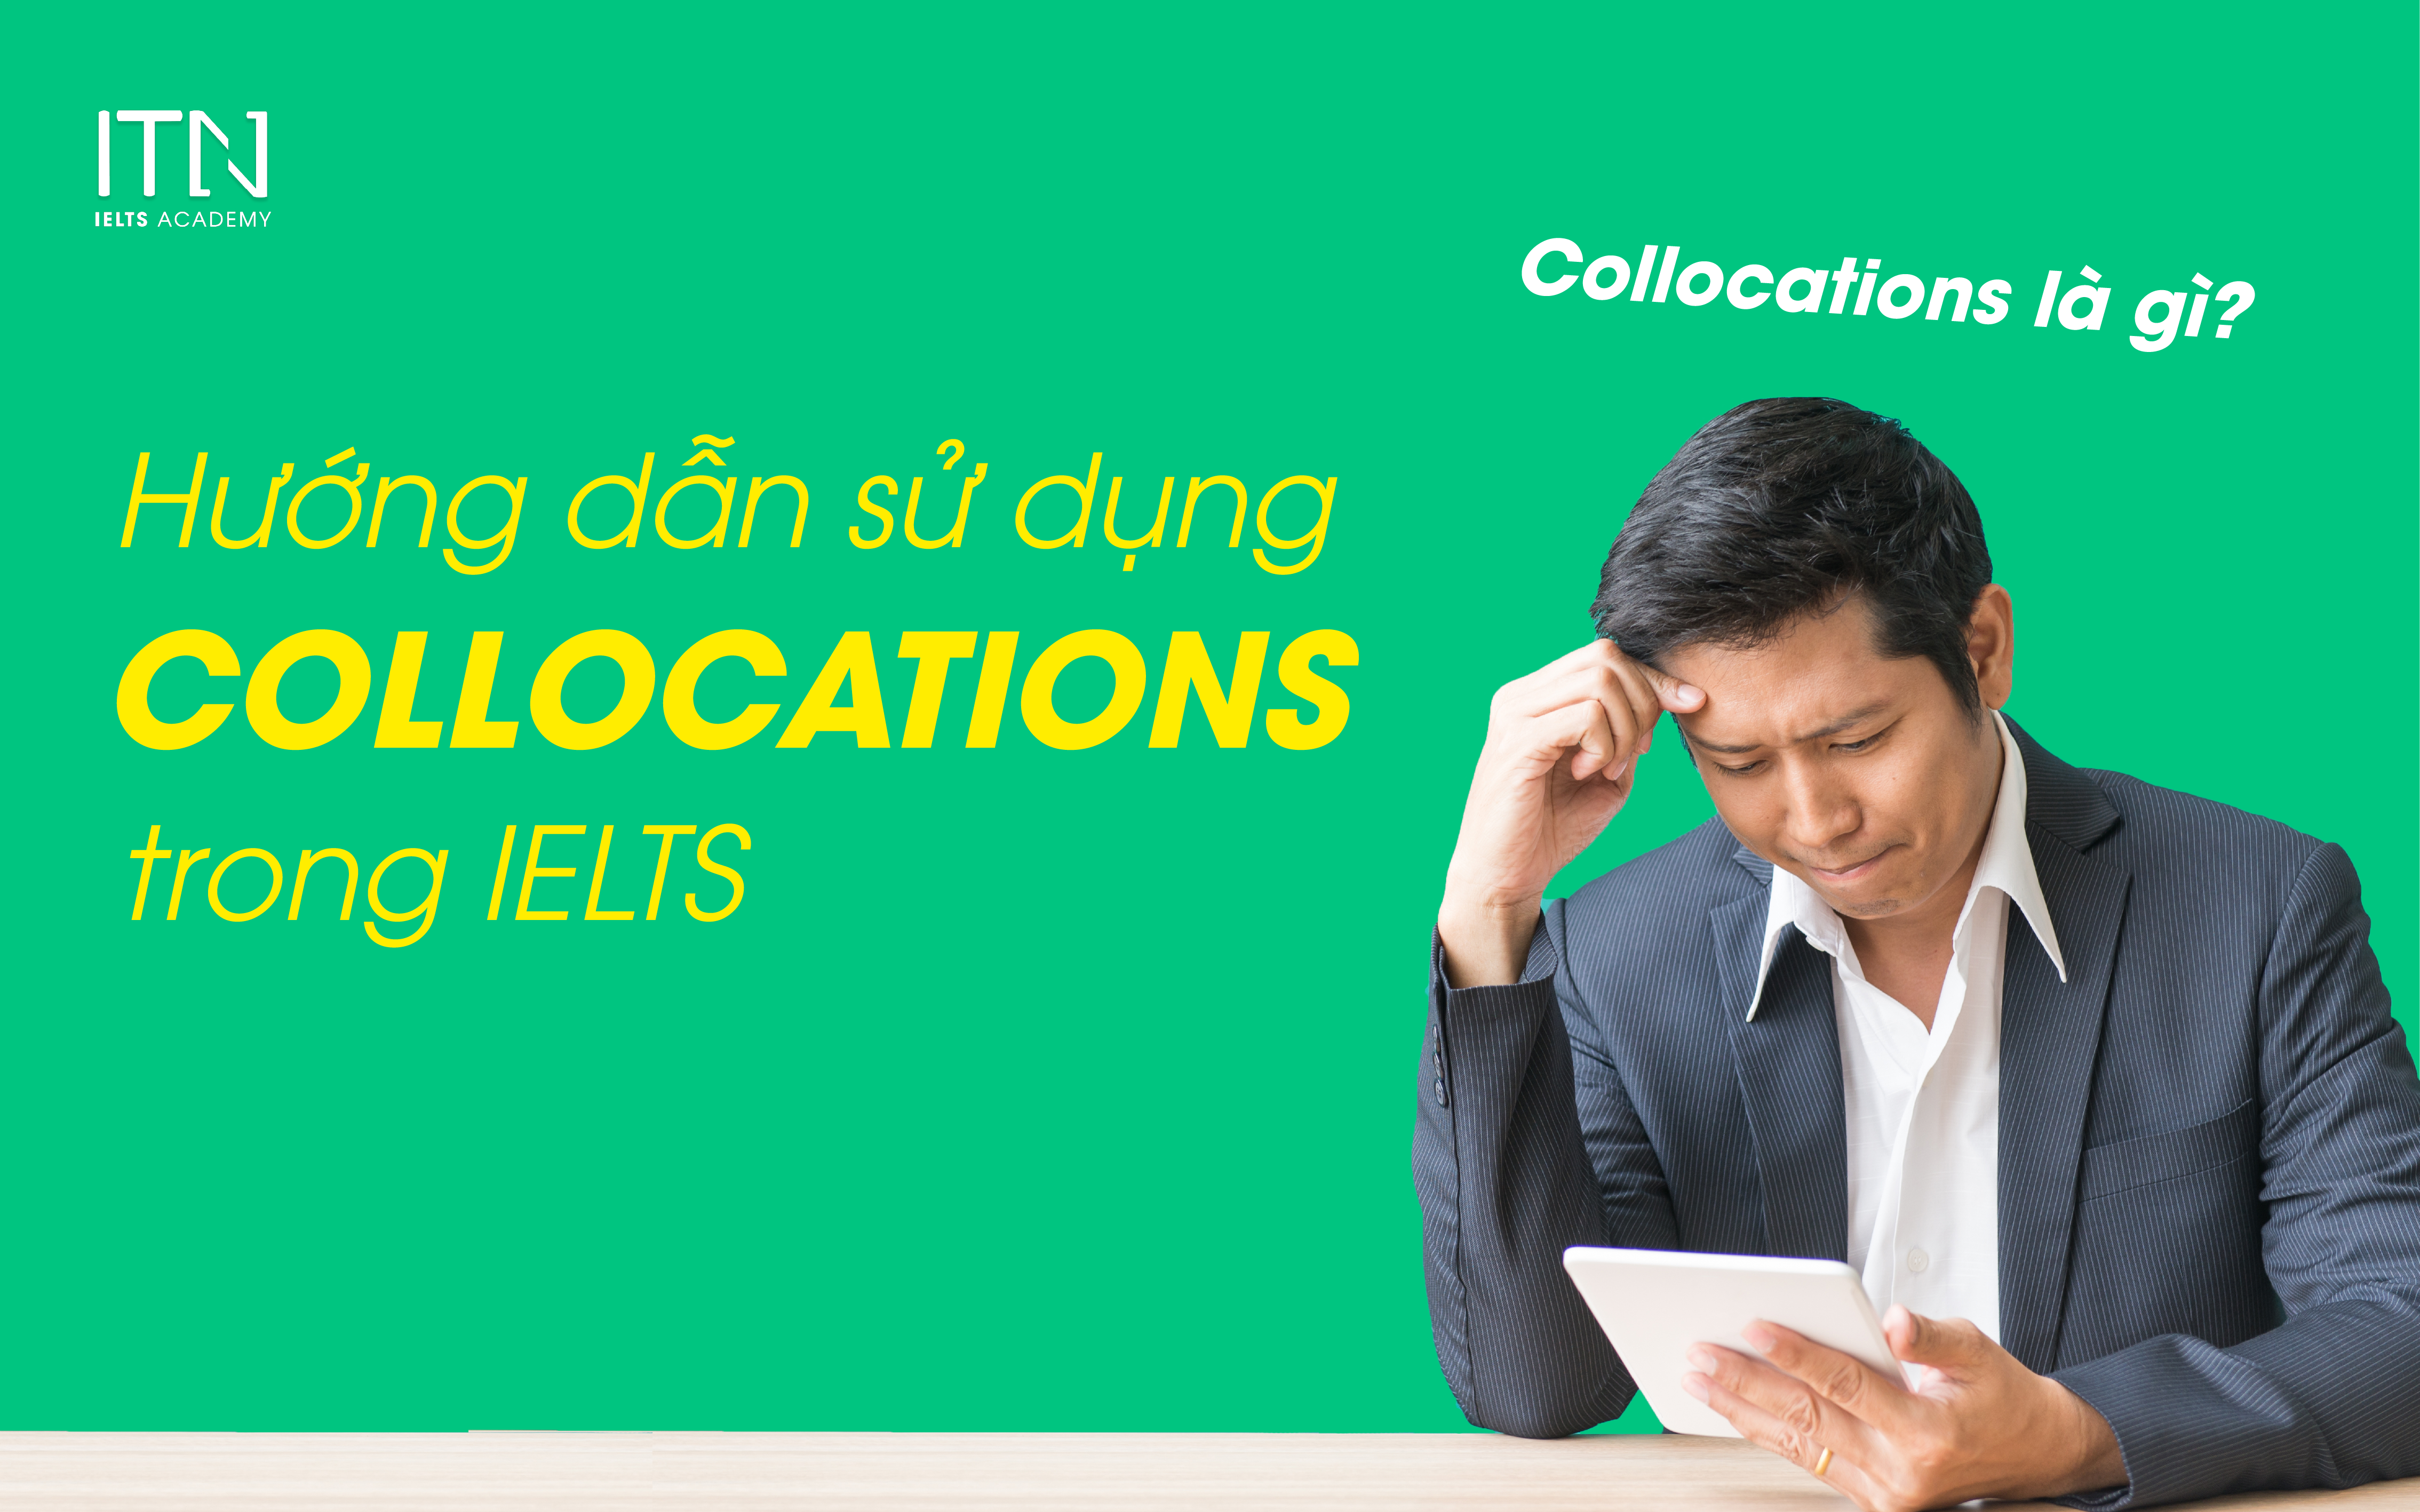 Collocations là gì? Hướng dẫn sử dụng Collocations trong IELTS